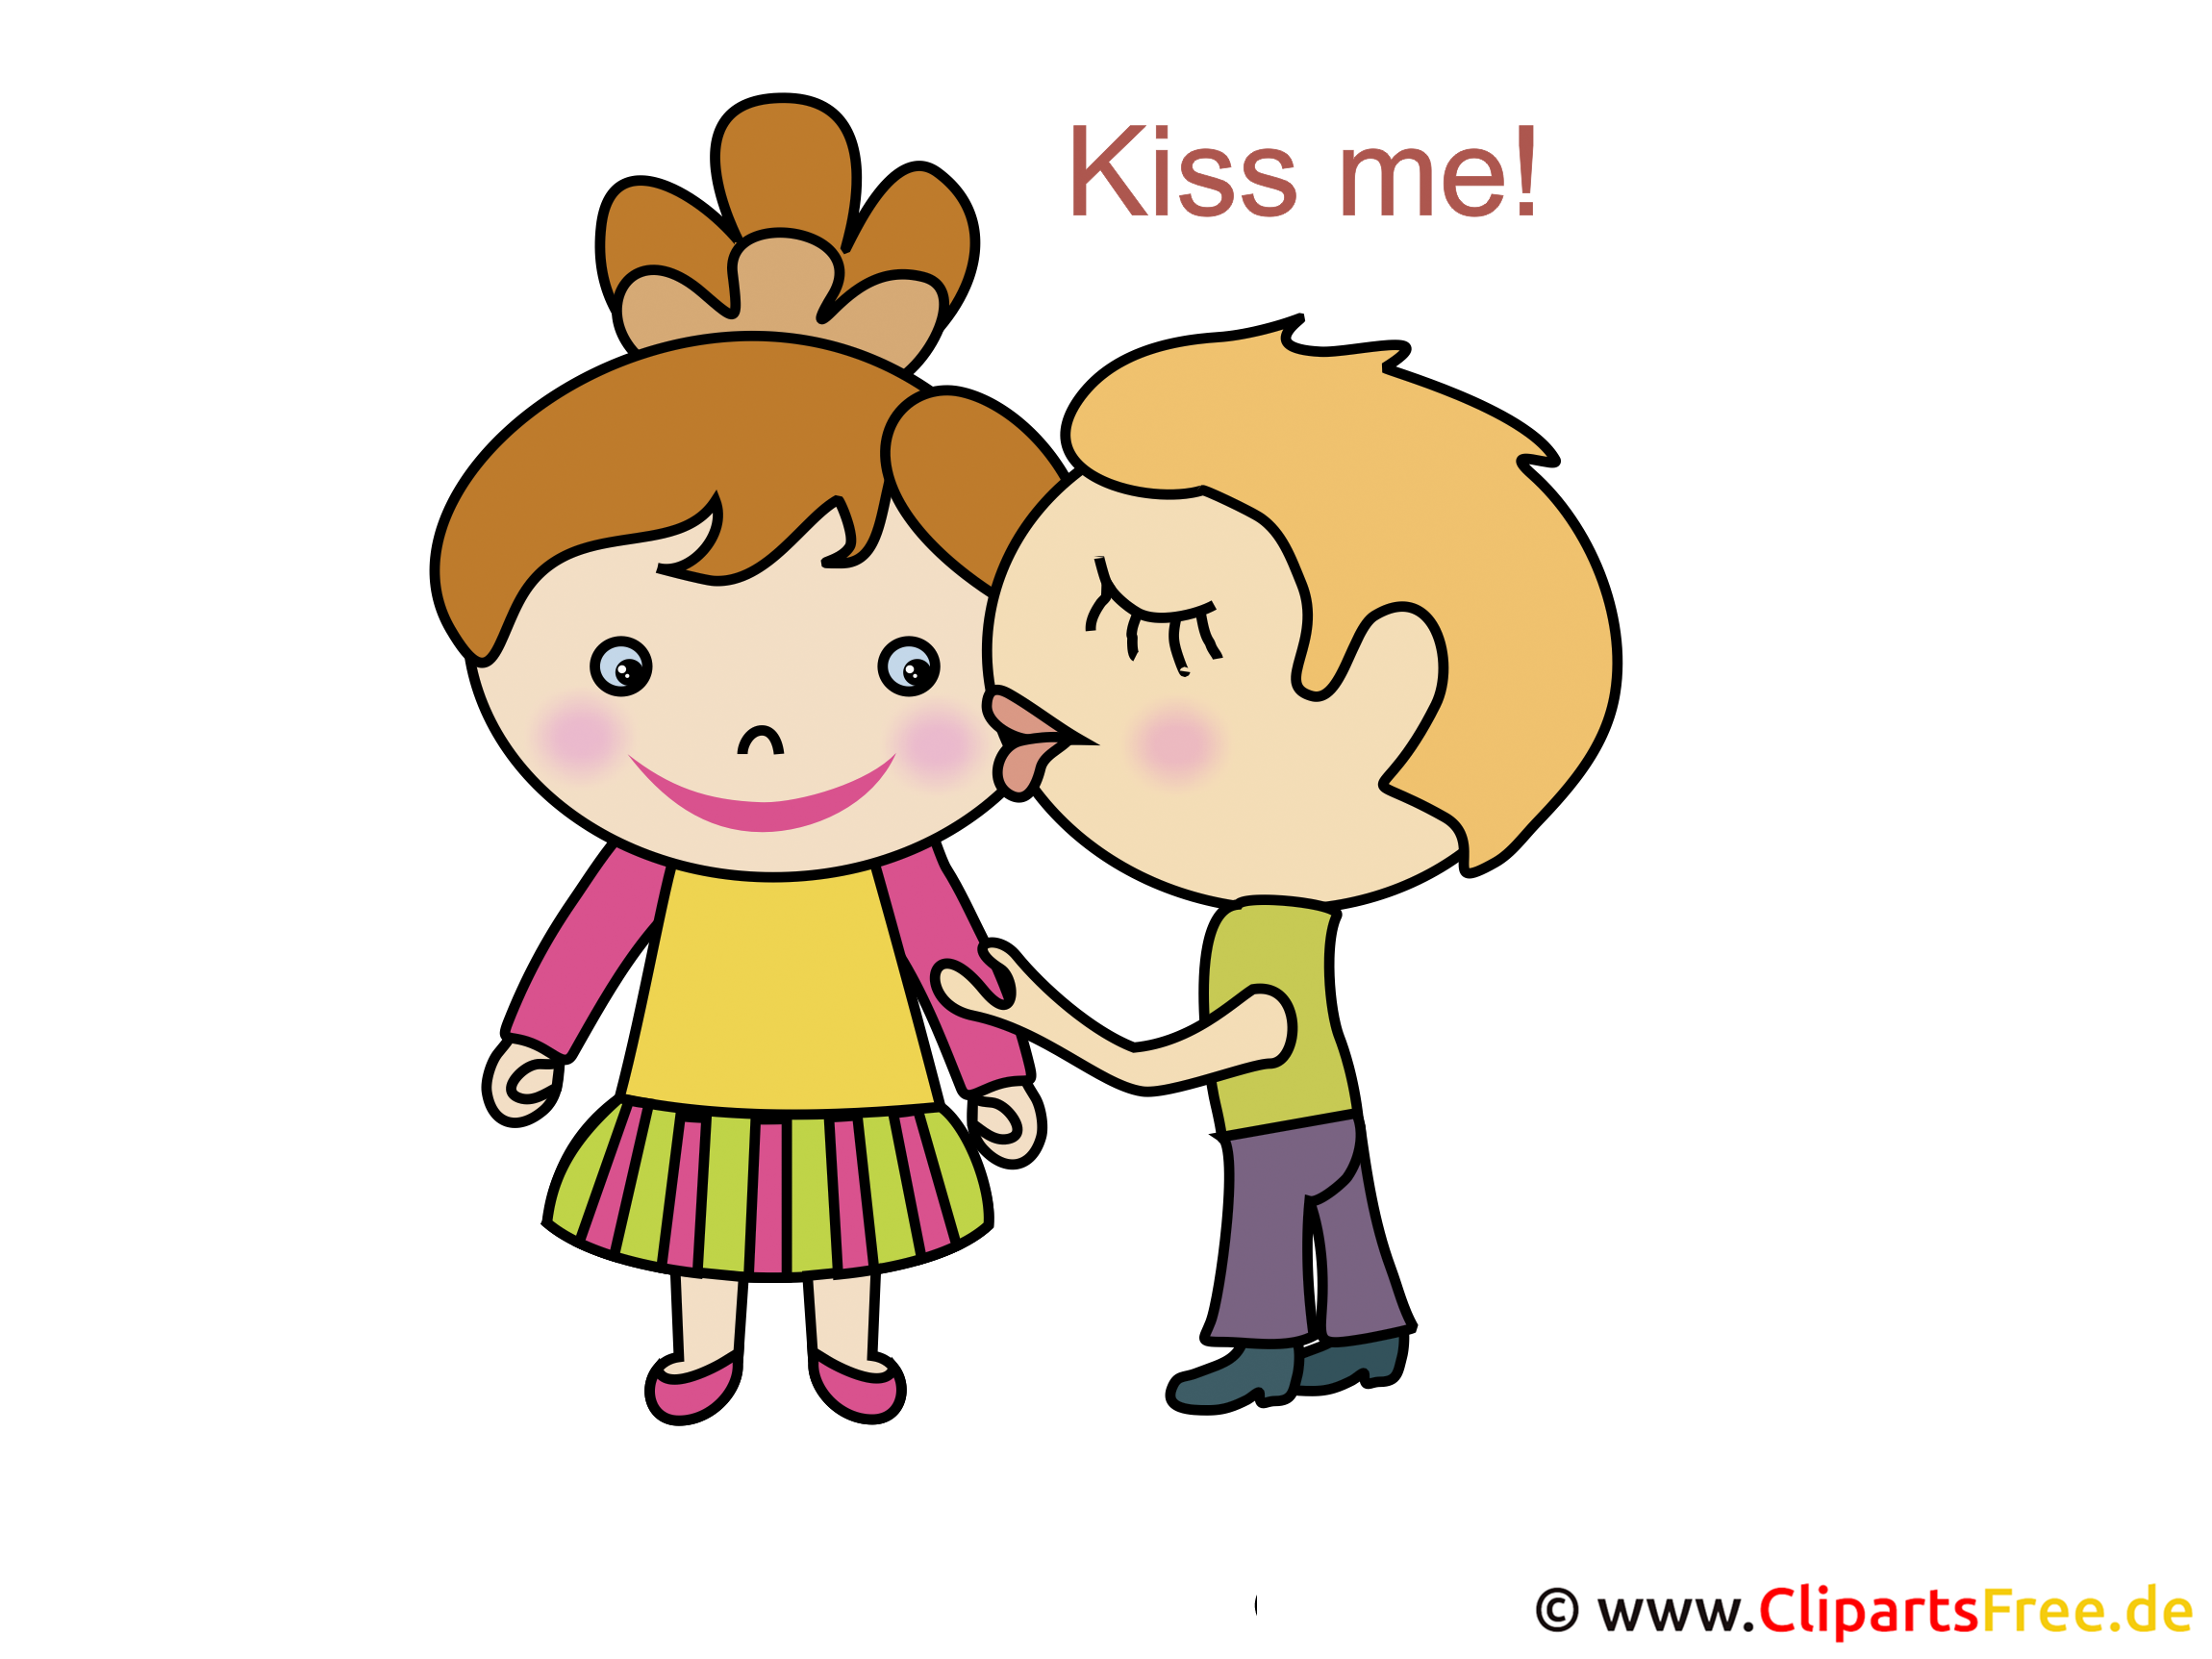 clip art free kiss - photo #23